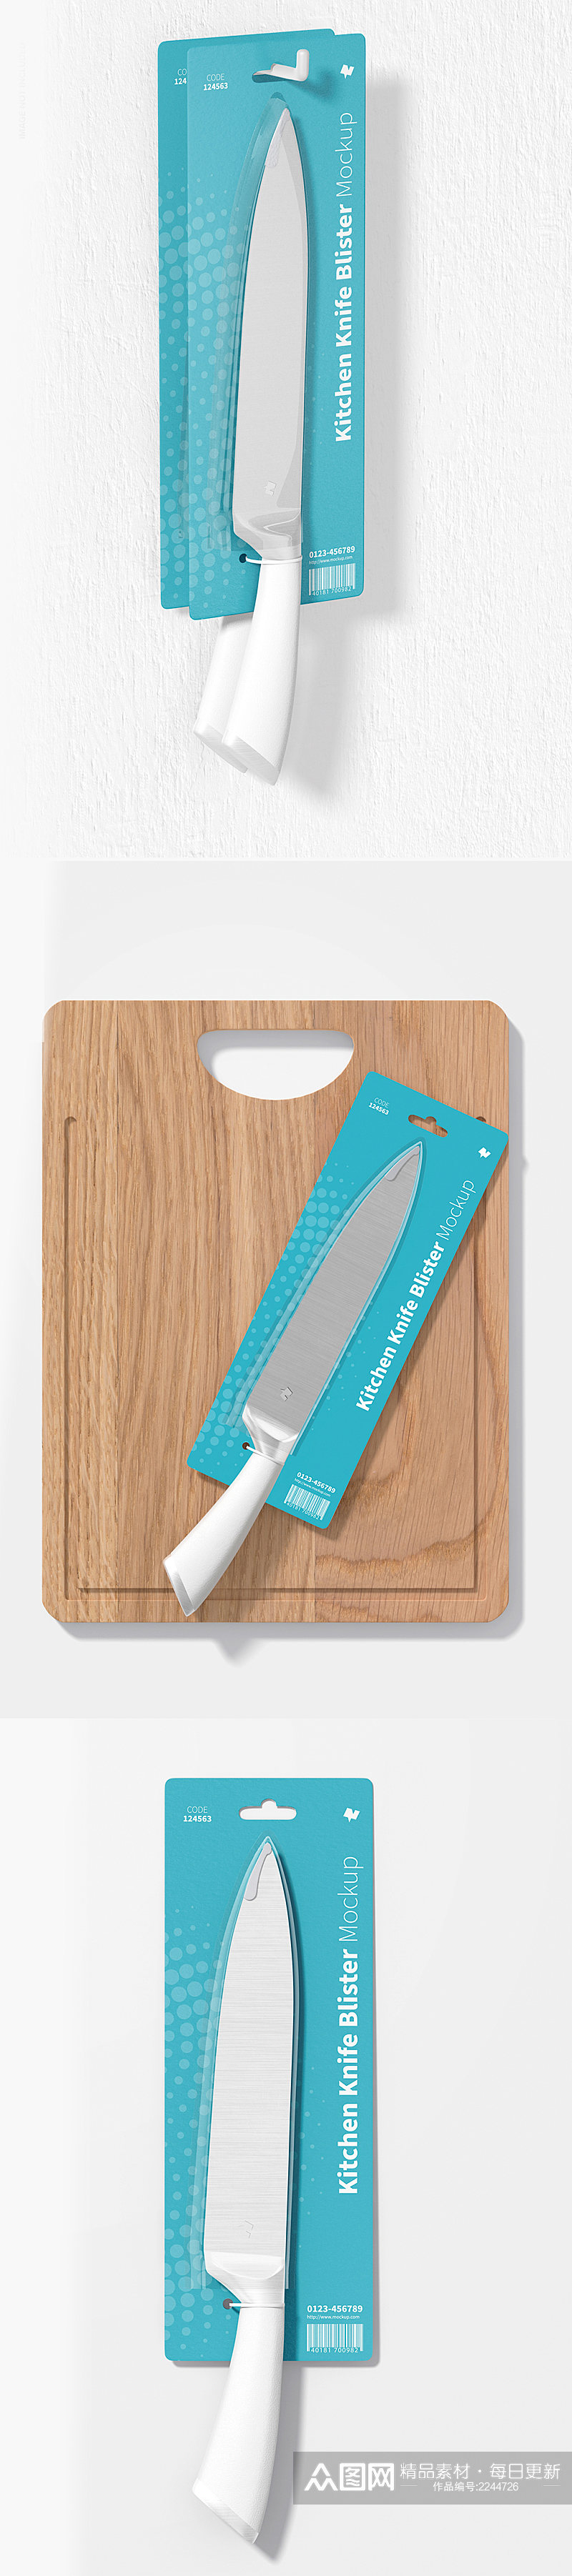 厨房菜刀具包装样机贴图素材